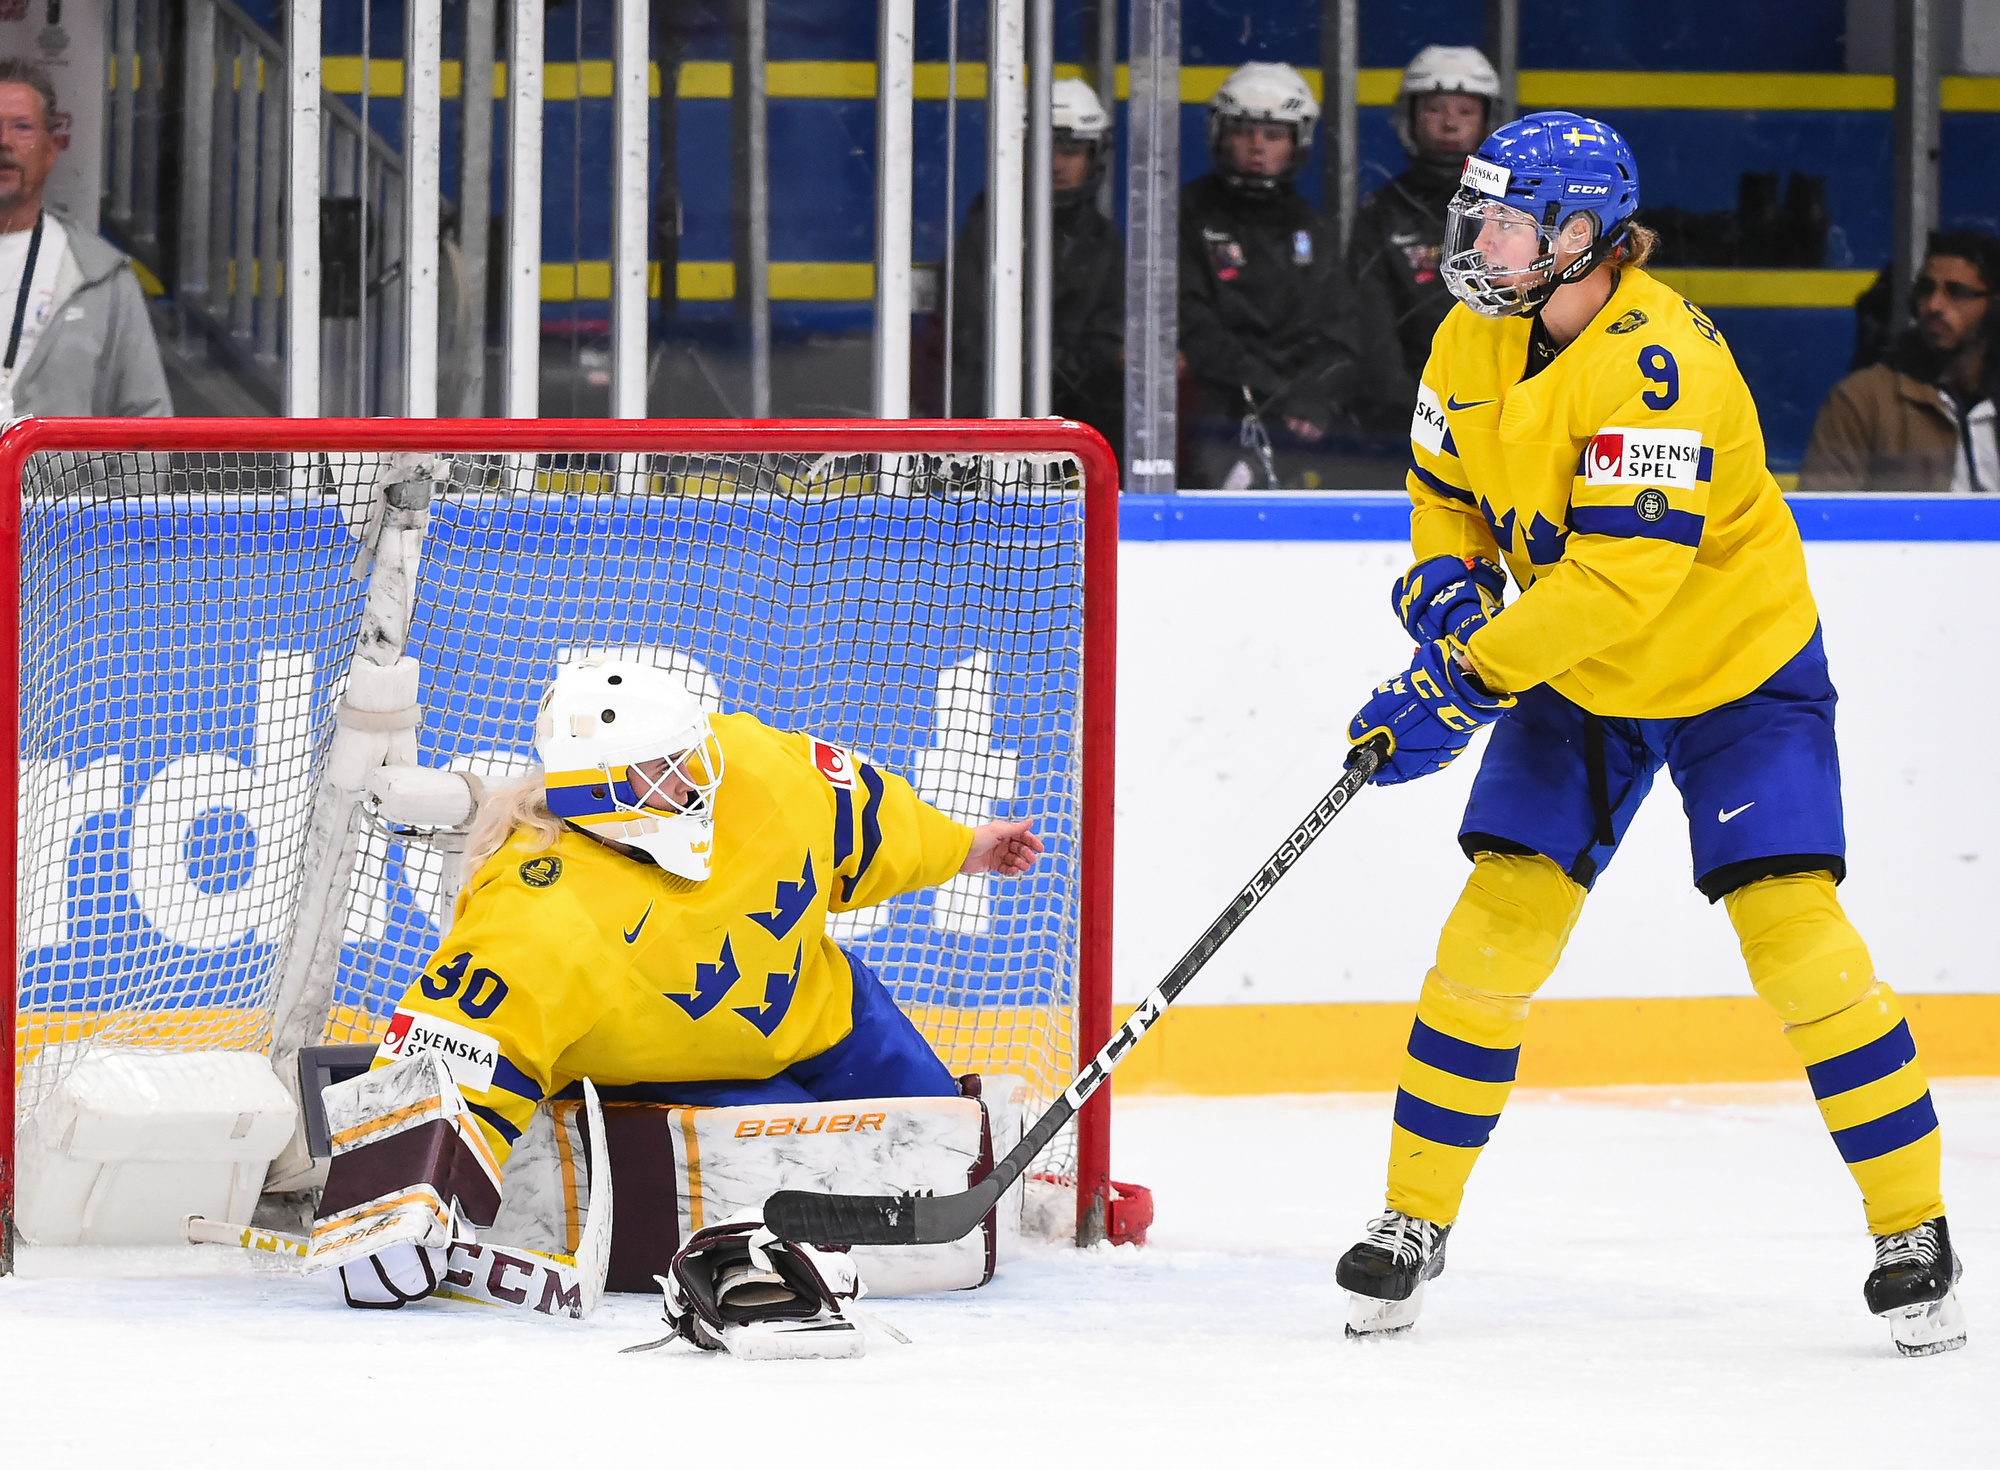 IIHF Gallery Canada vs Sweden (QF) 2022 IIHF Ice Hockey Women's